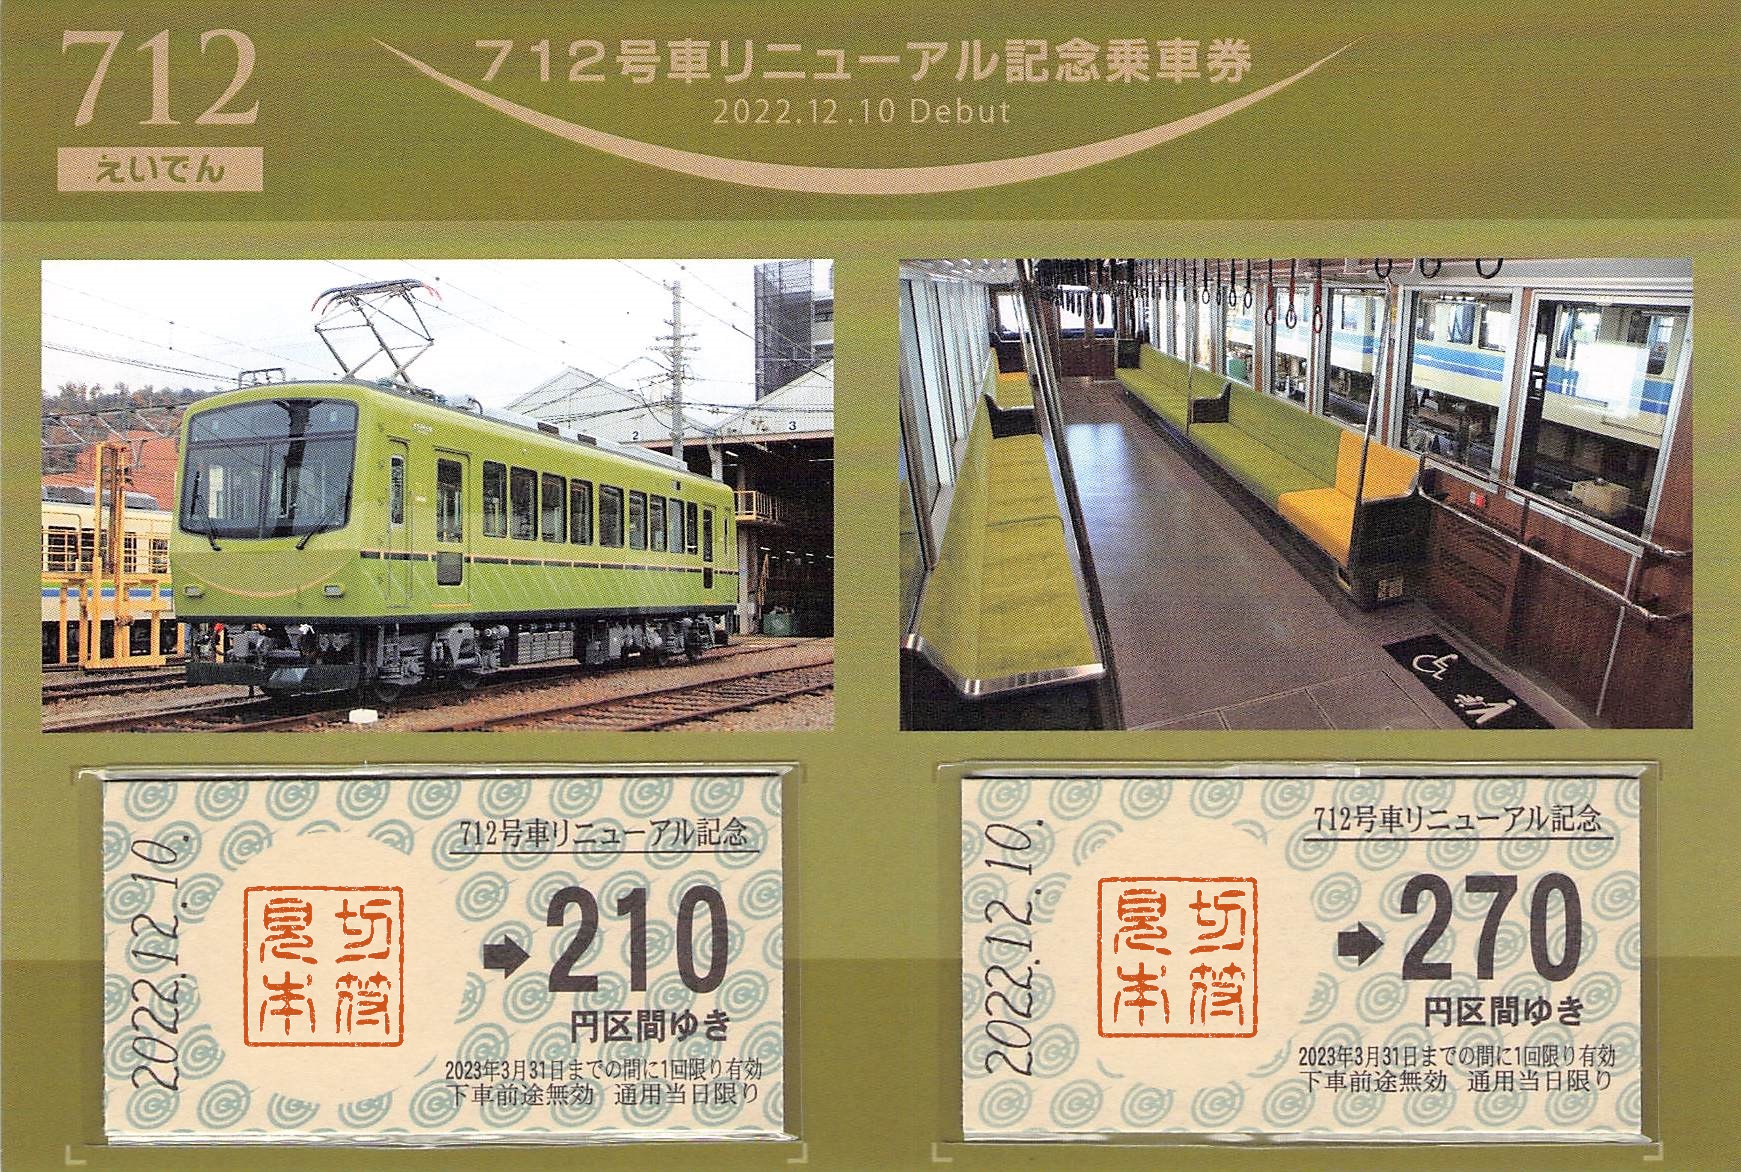 叡山電鉄-712号車リニューアル記念乗車券 | Whatomの切符研究所